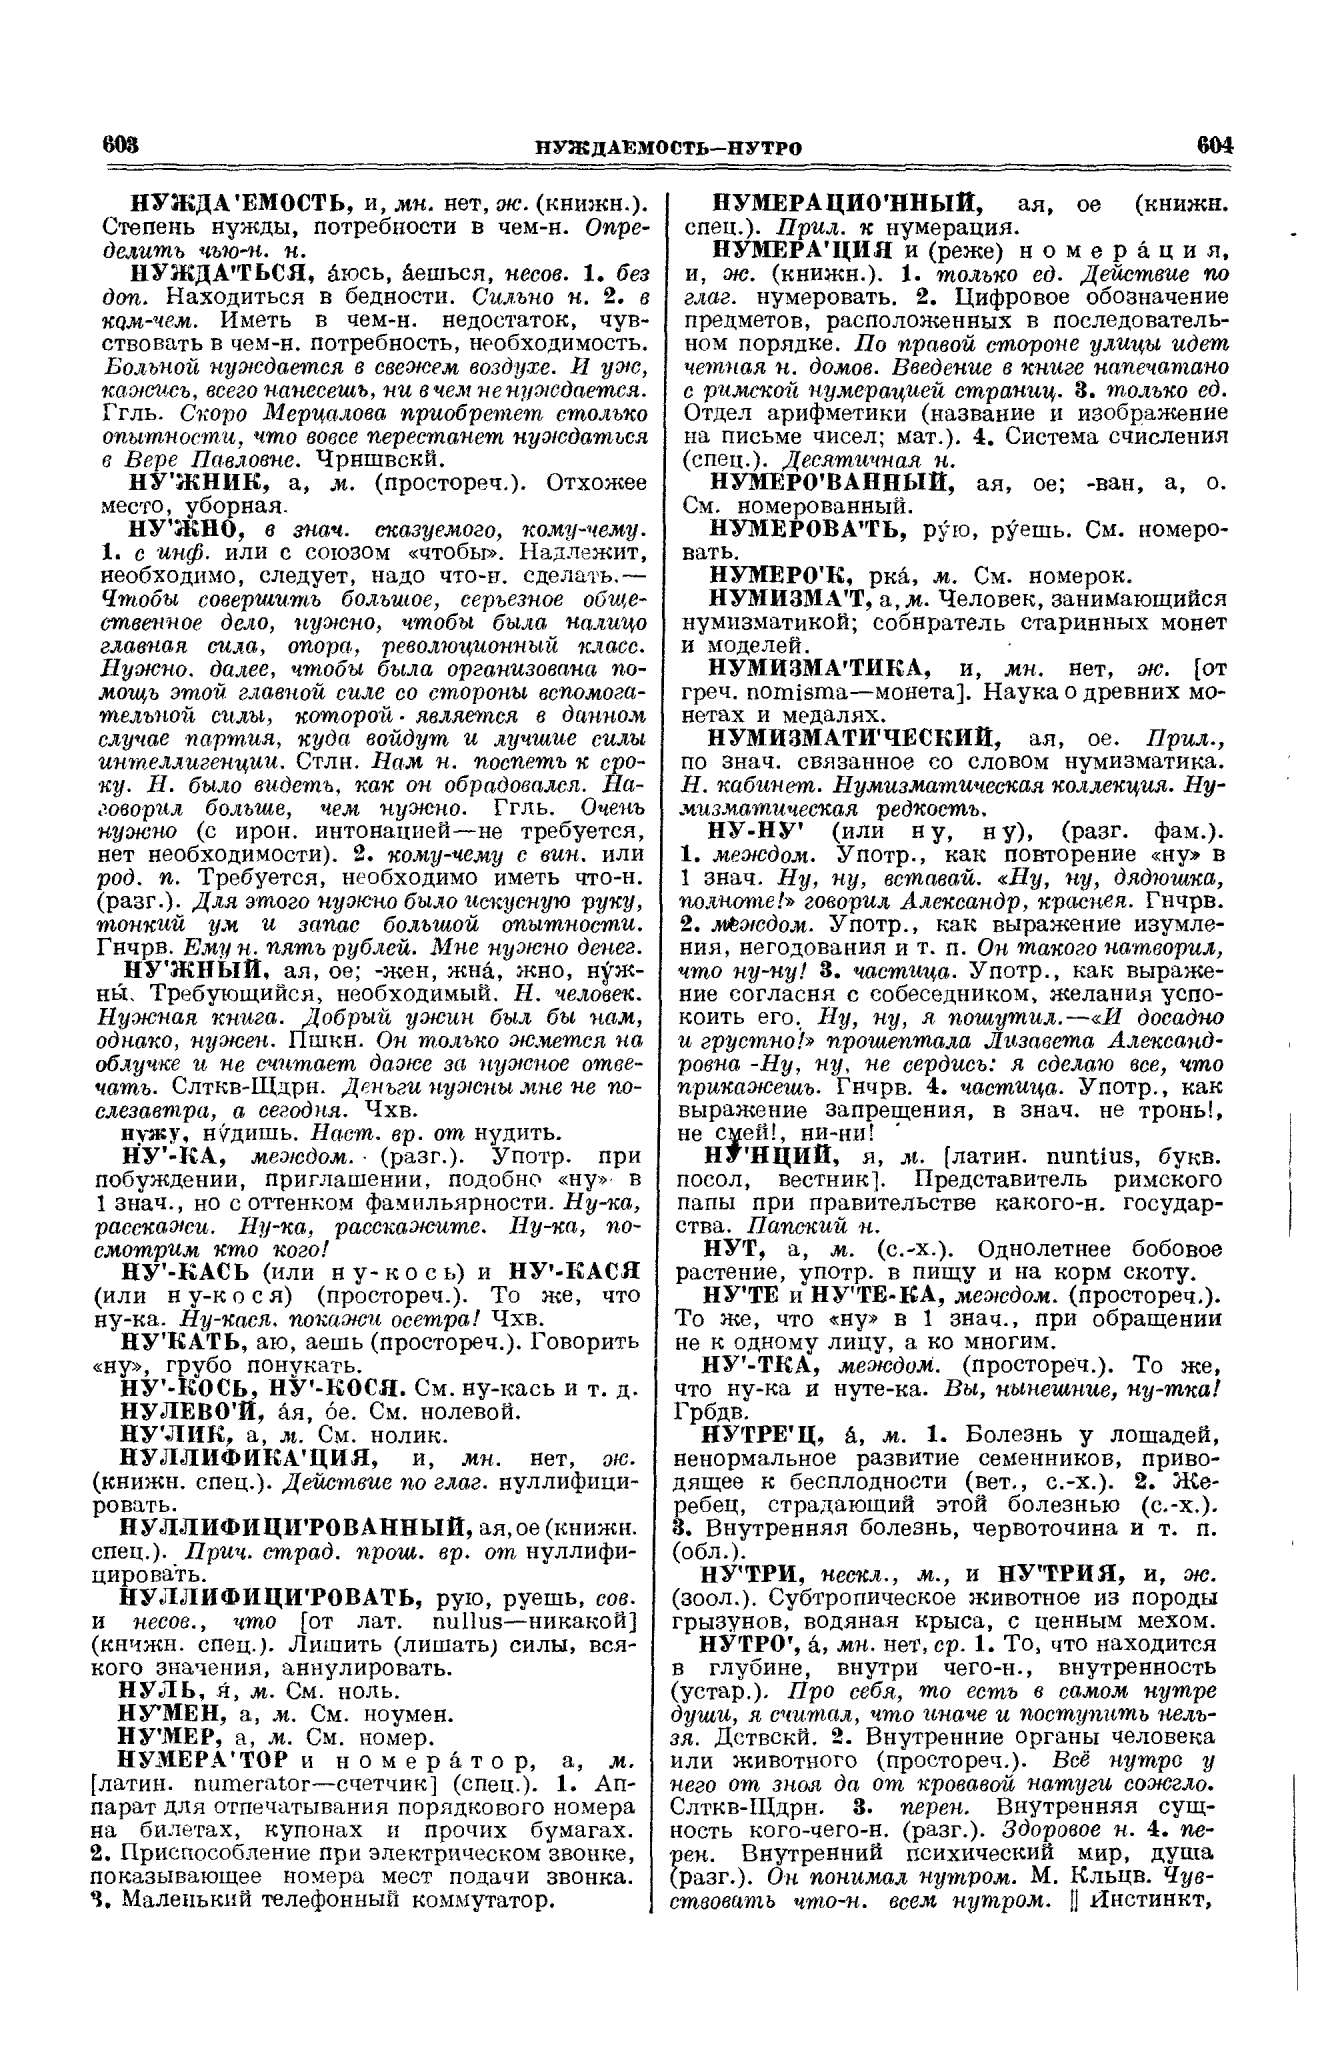 Фотокопия pdf / скан страницы 302 толкового словаря Ушакова (том 2)